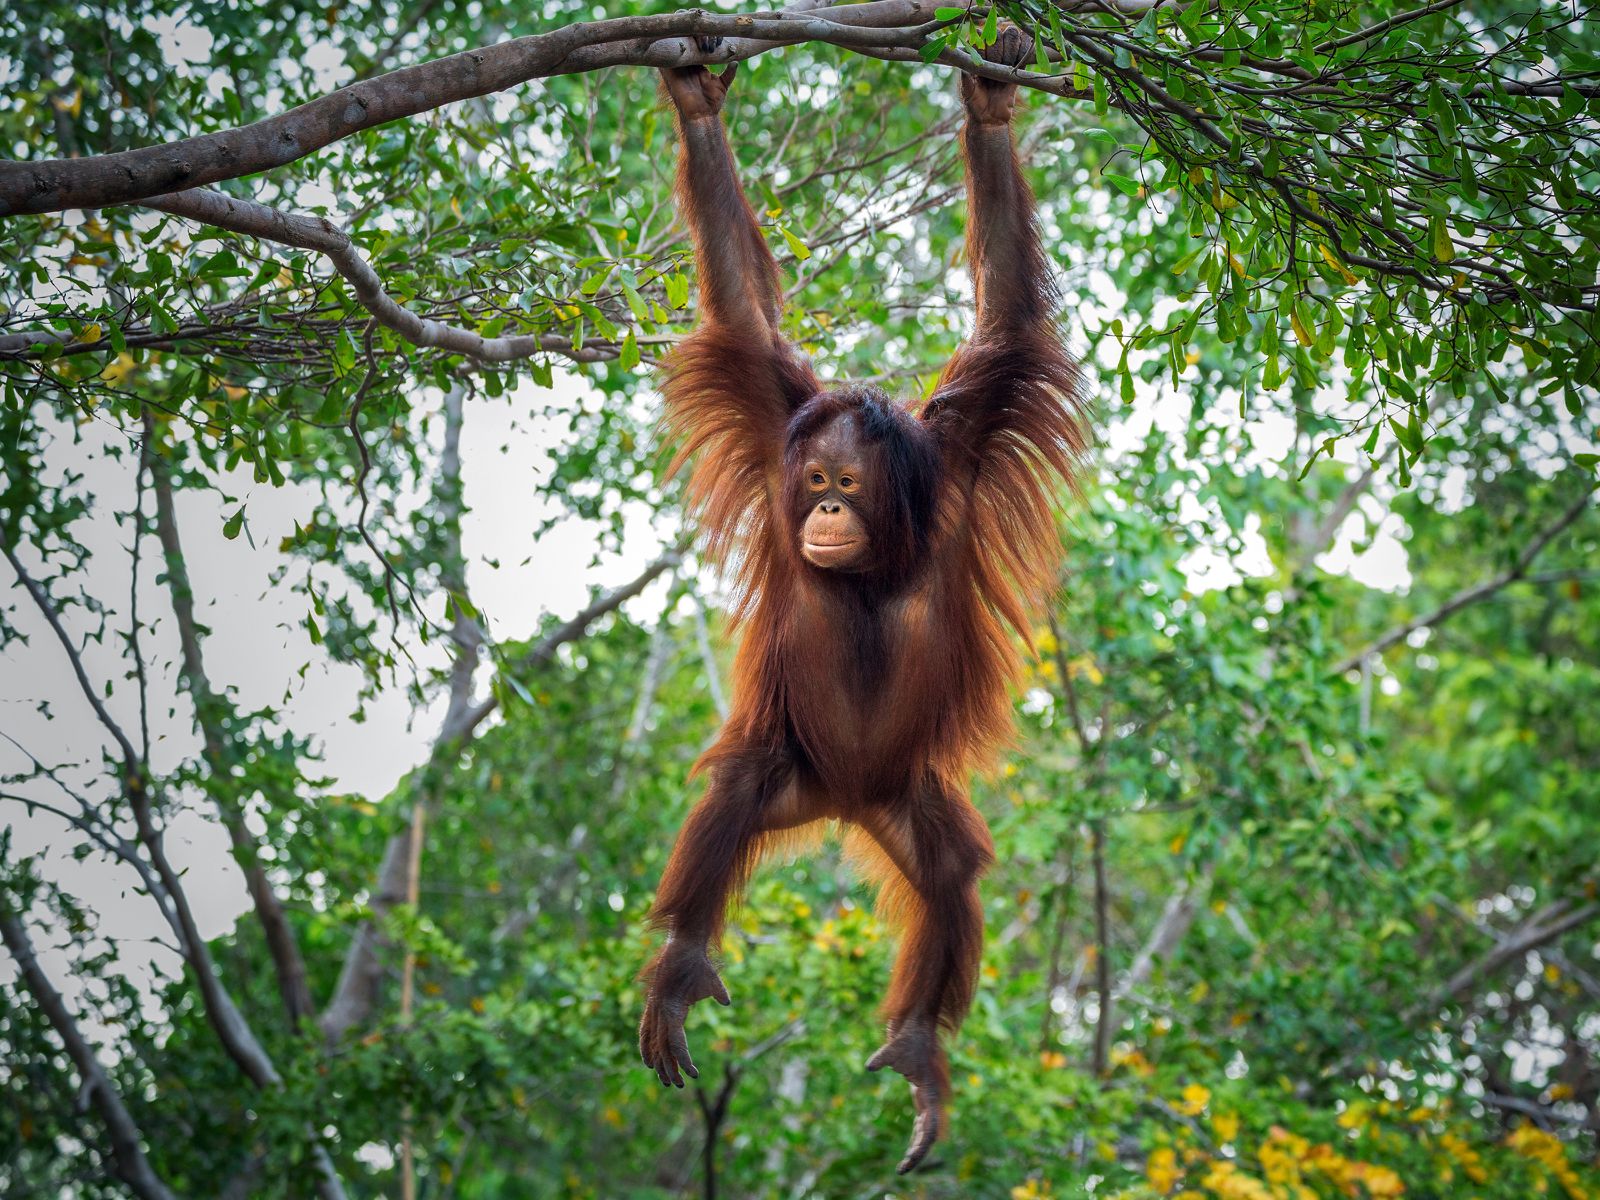 An Orangutan spotted in Borneo, Malaysia